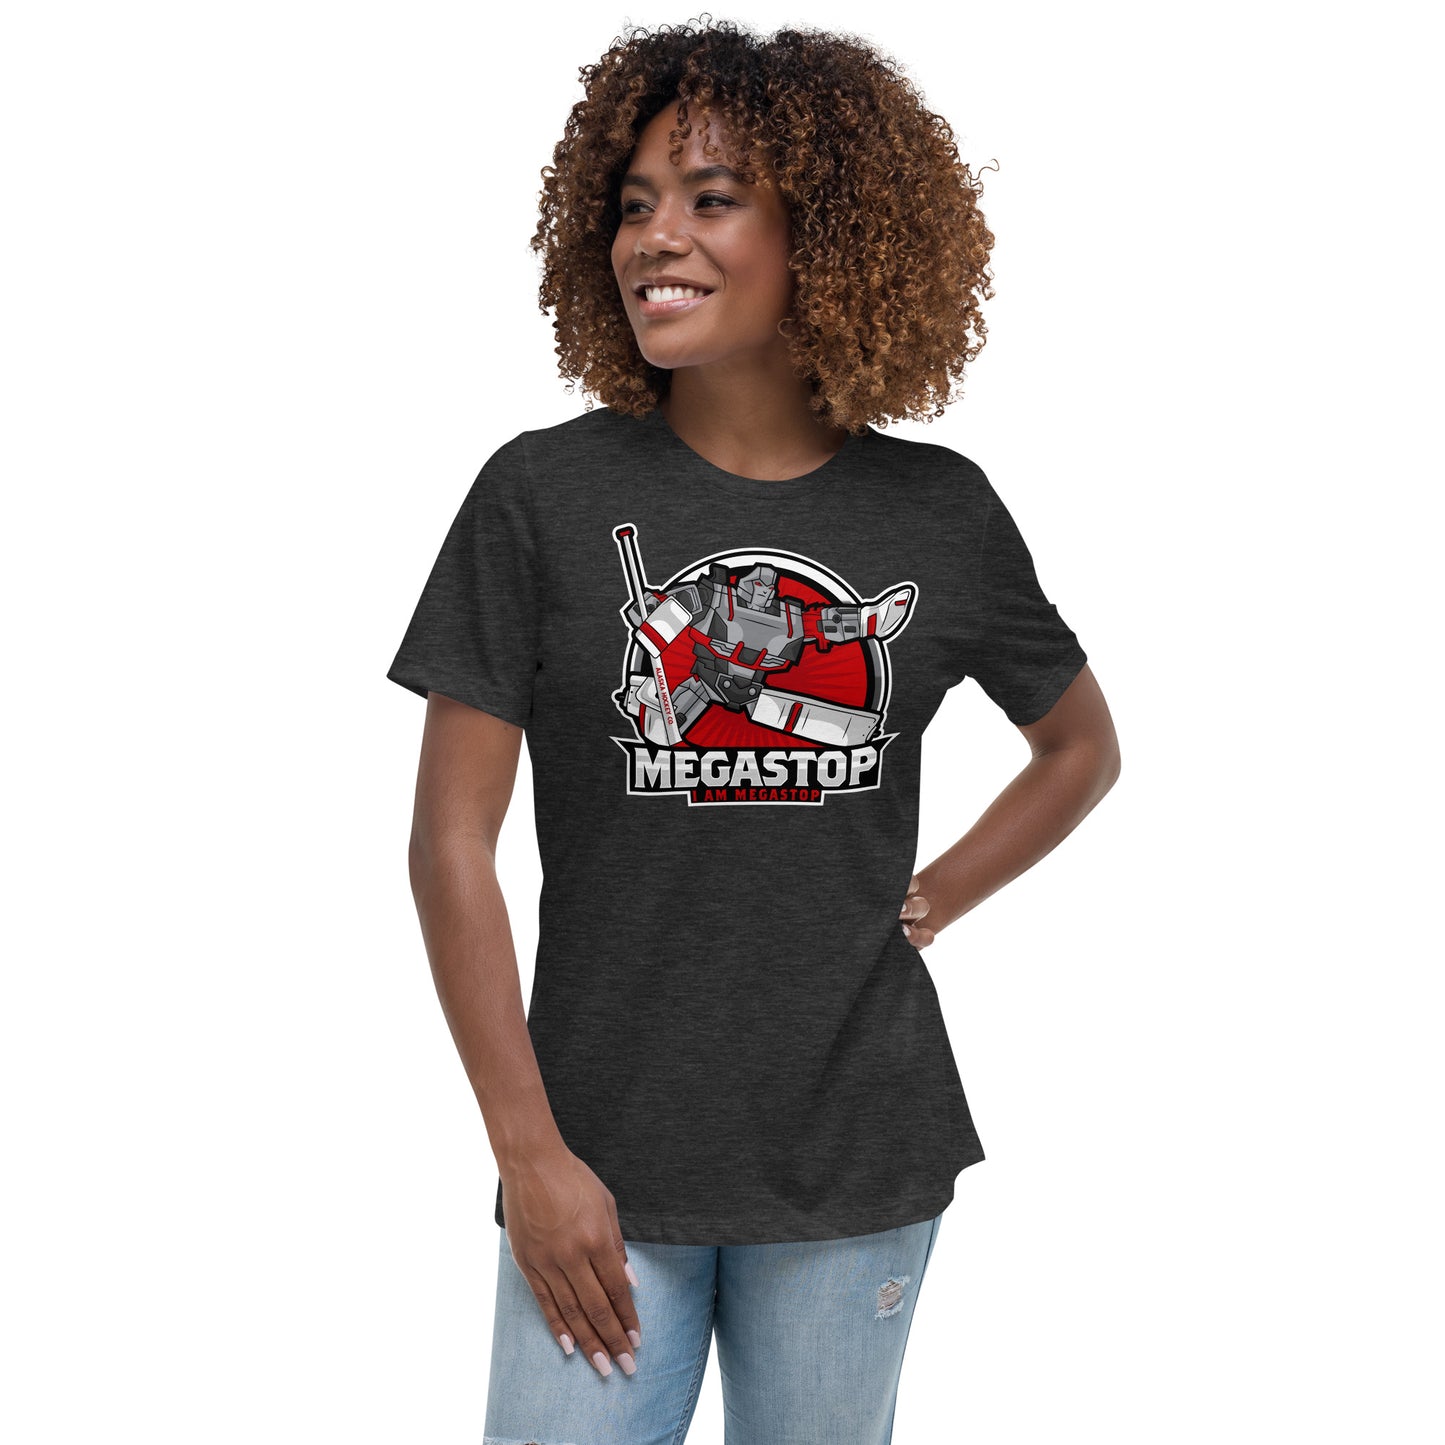 Megastop Women's Relaxed T-Shirt